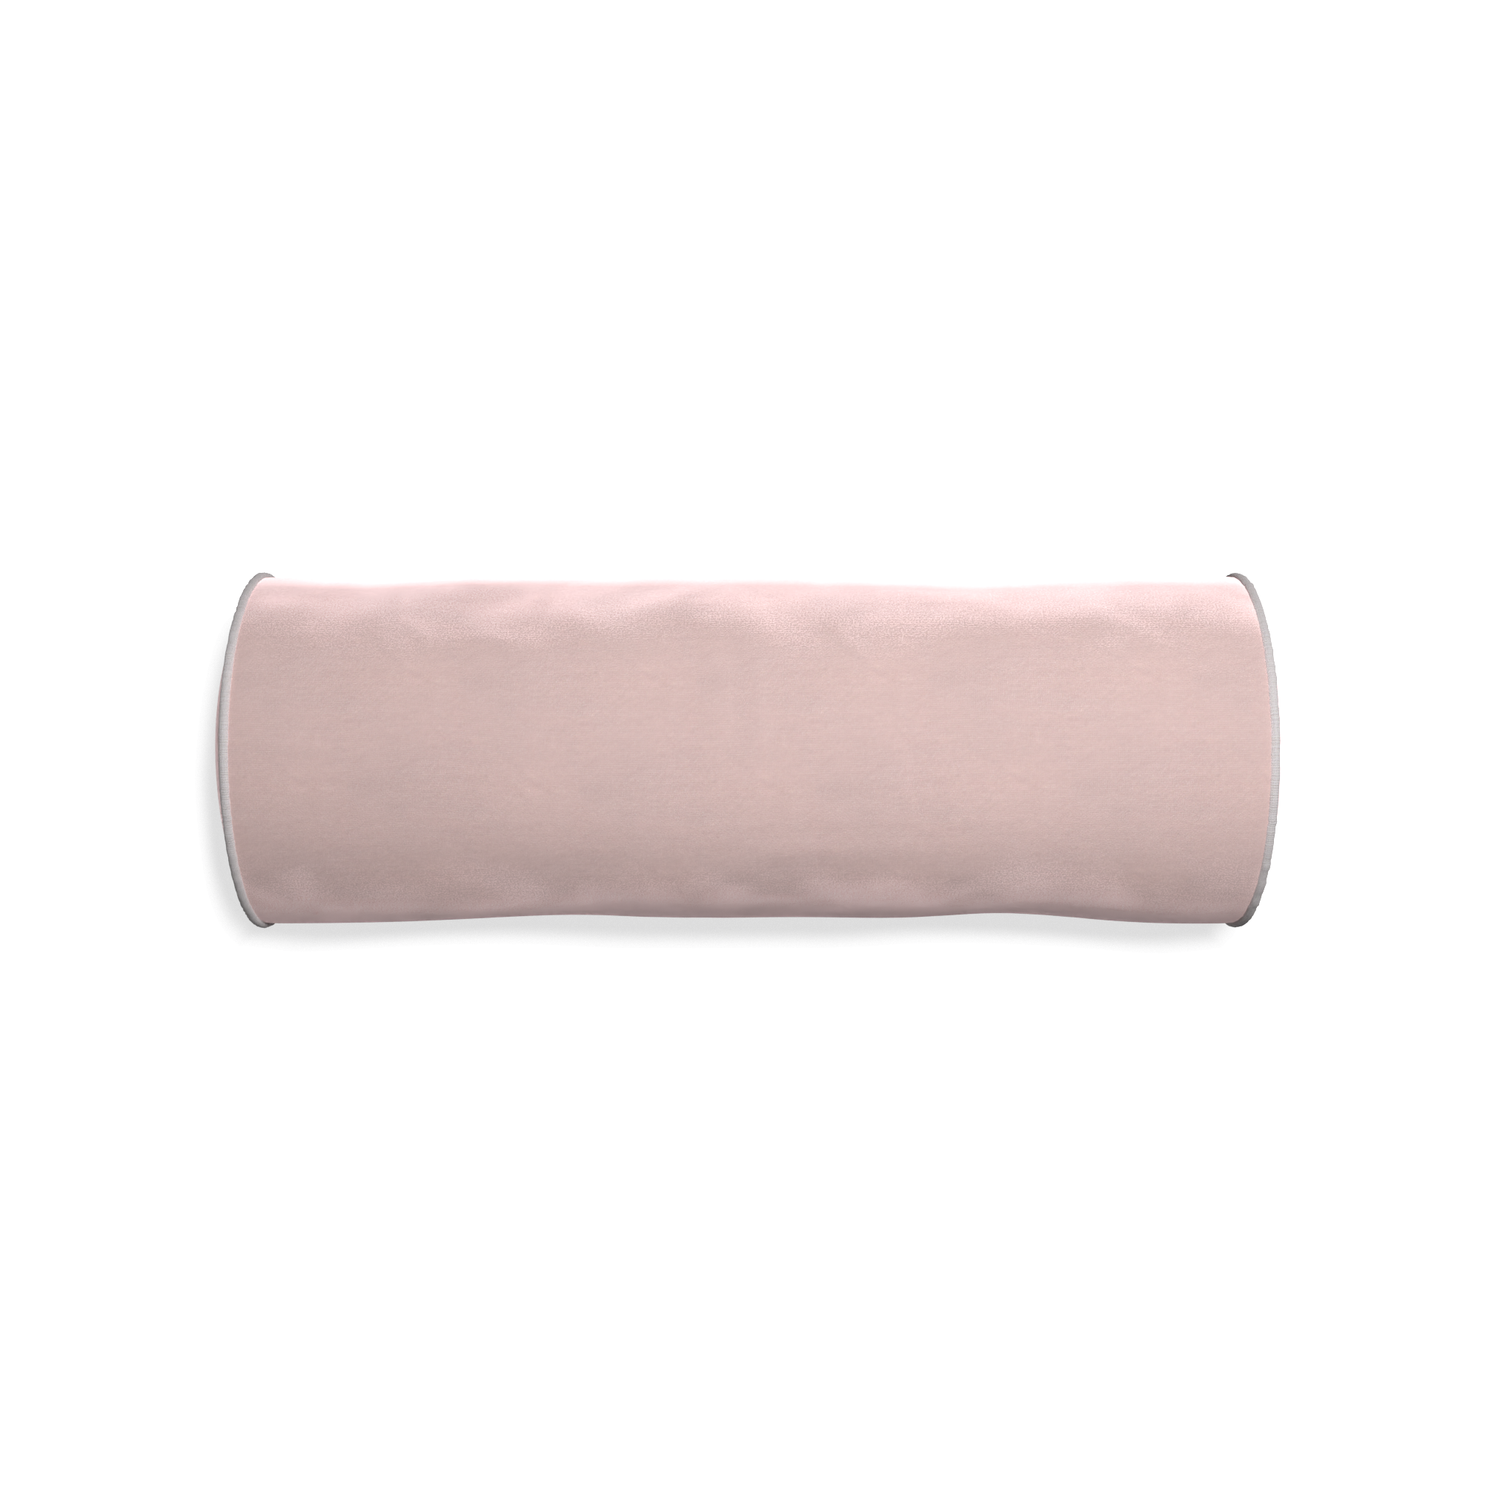 Bolster rose velvet custom pillow with pebble piping on white background